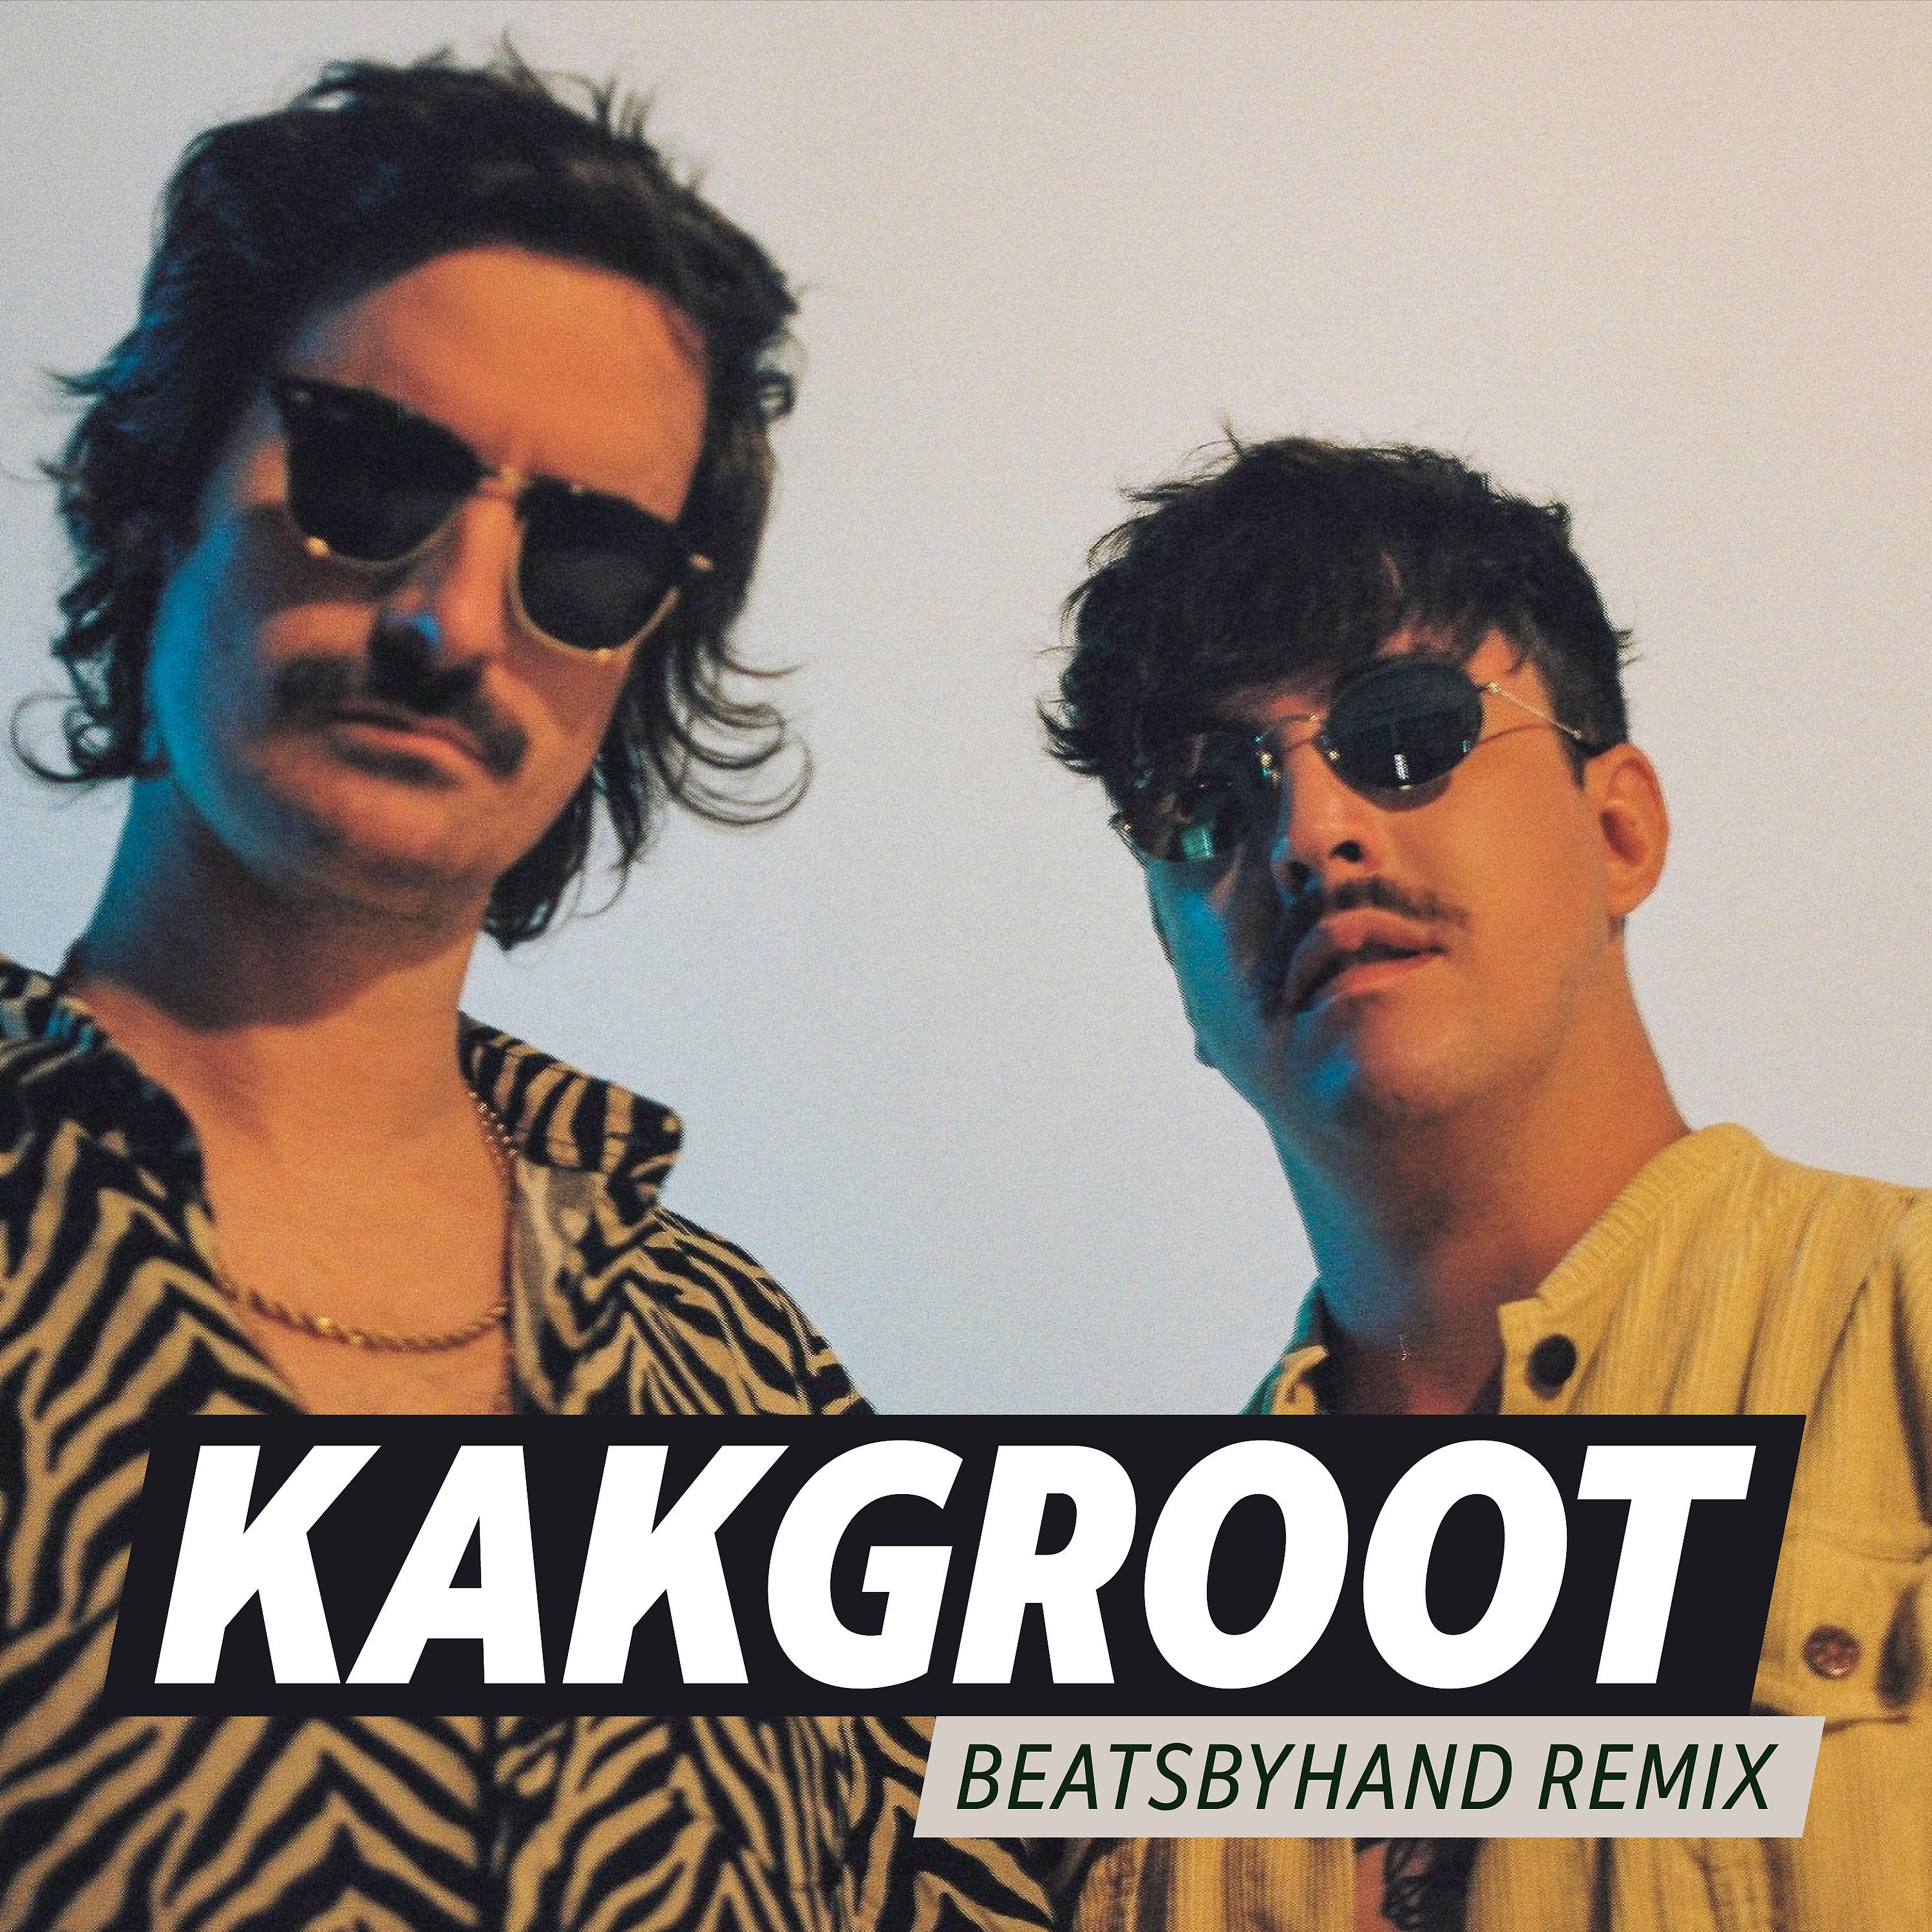 Постер альбома Kakgroot (Beatsbyhand Remix)